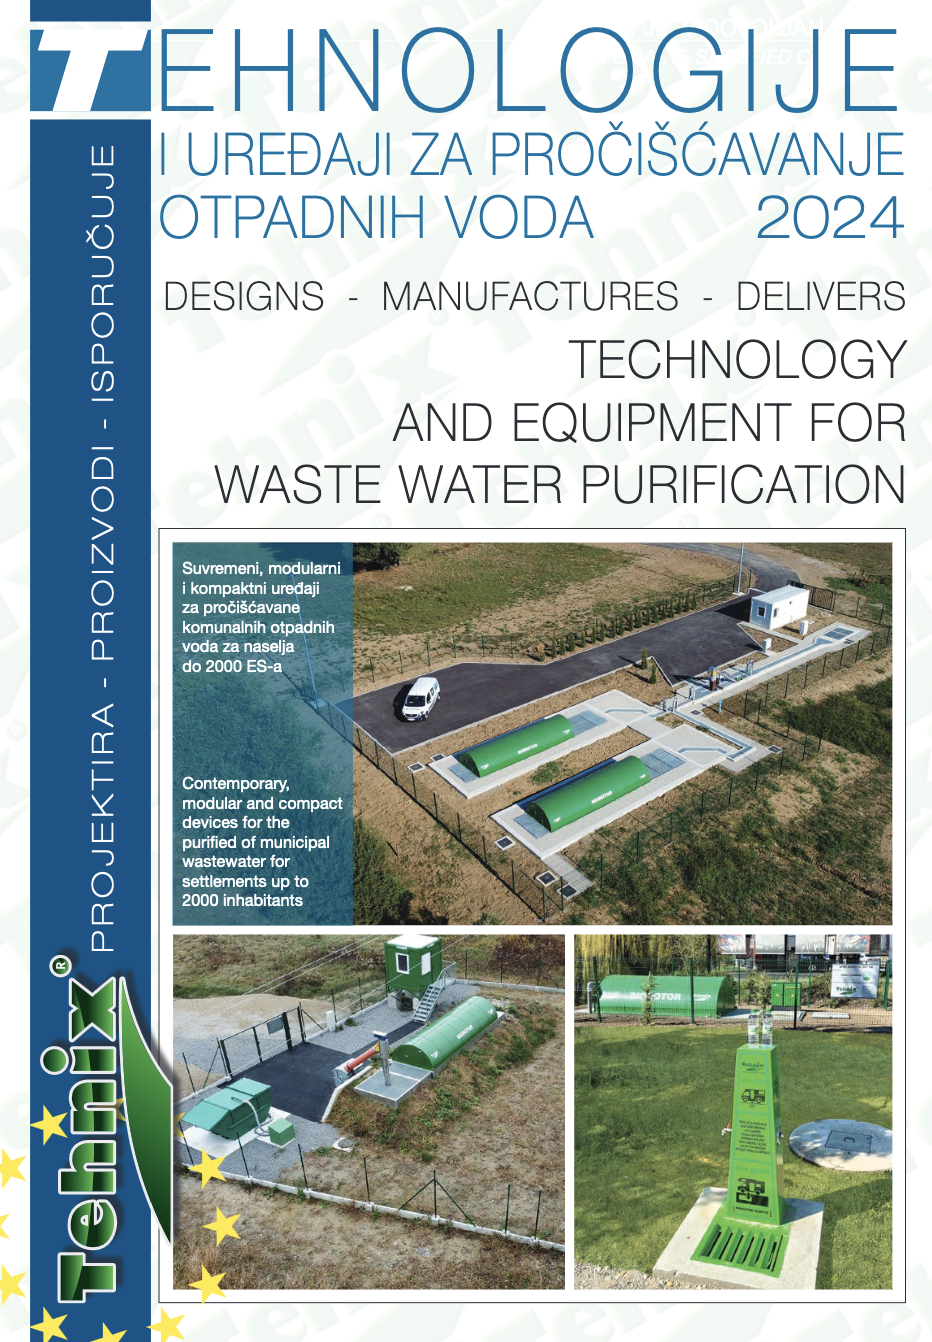 Tehnologije i uređaji za pročisćavanje otpadnih voda